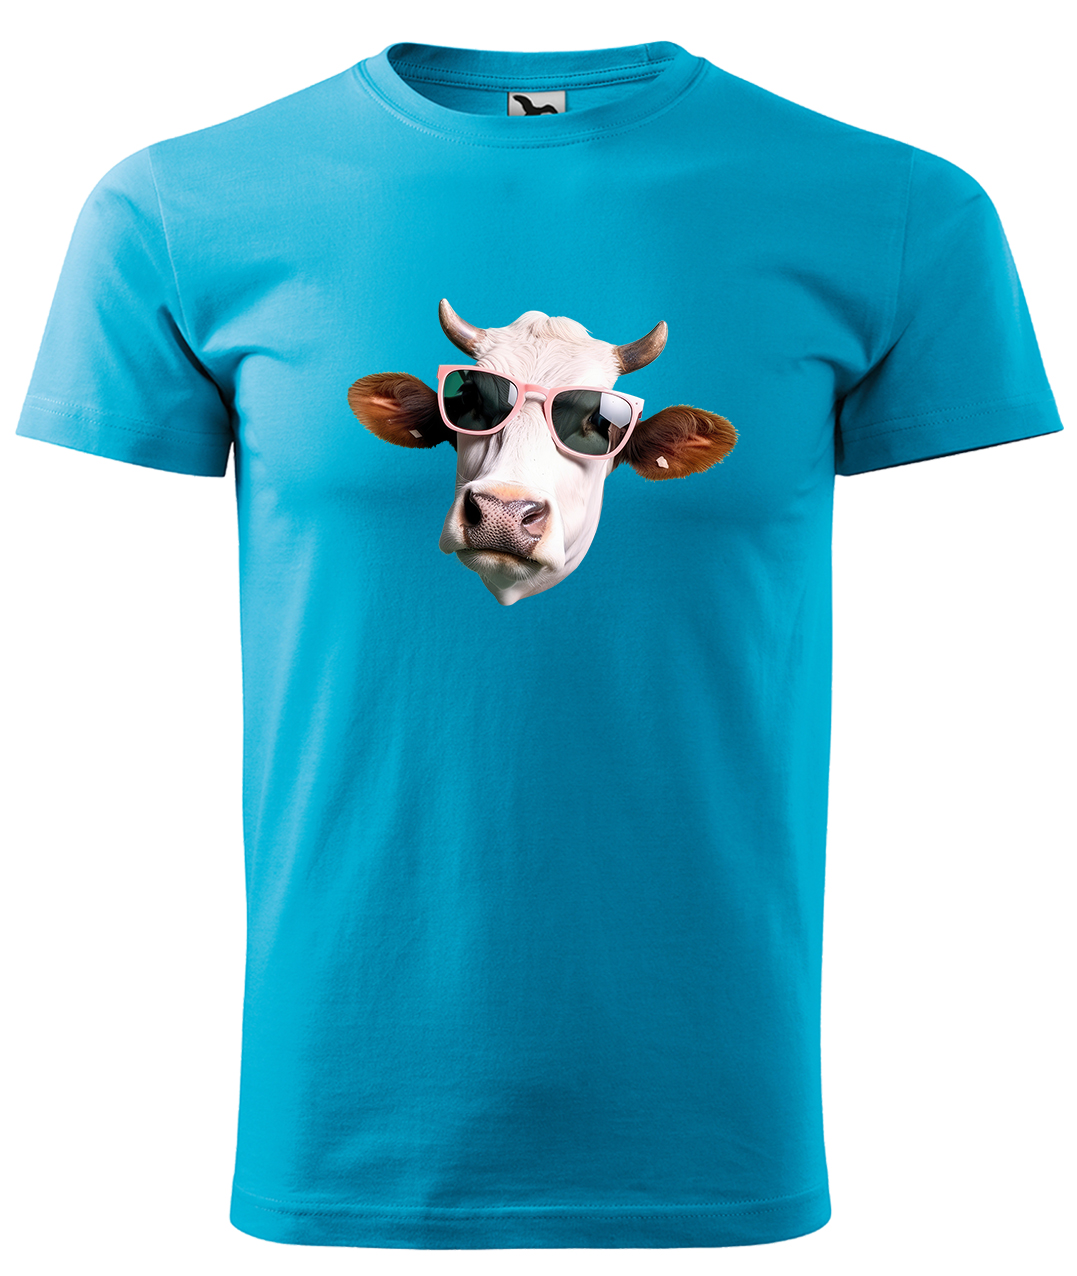 Dětské tričko s krávou - Kráva v brýlích Velikost: 4 roky / 110 cm, Barva: Tyrkysová (44), Délka rukávu: Krátký rukáv